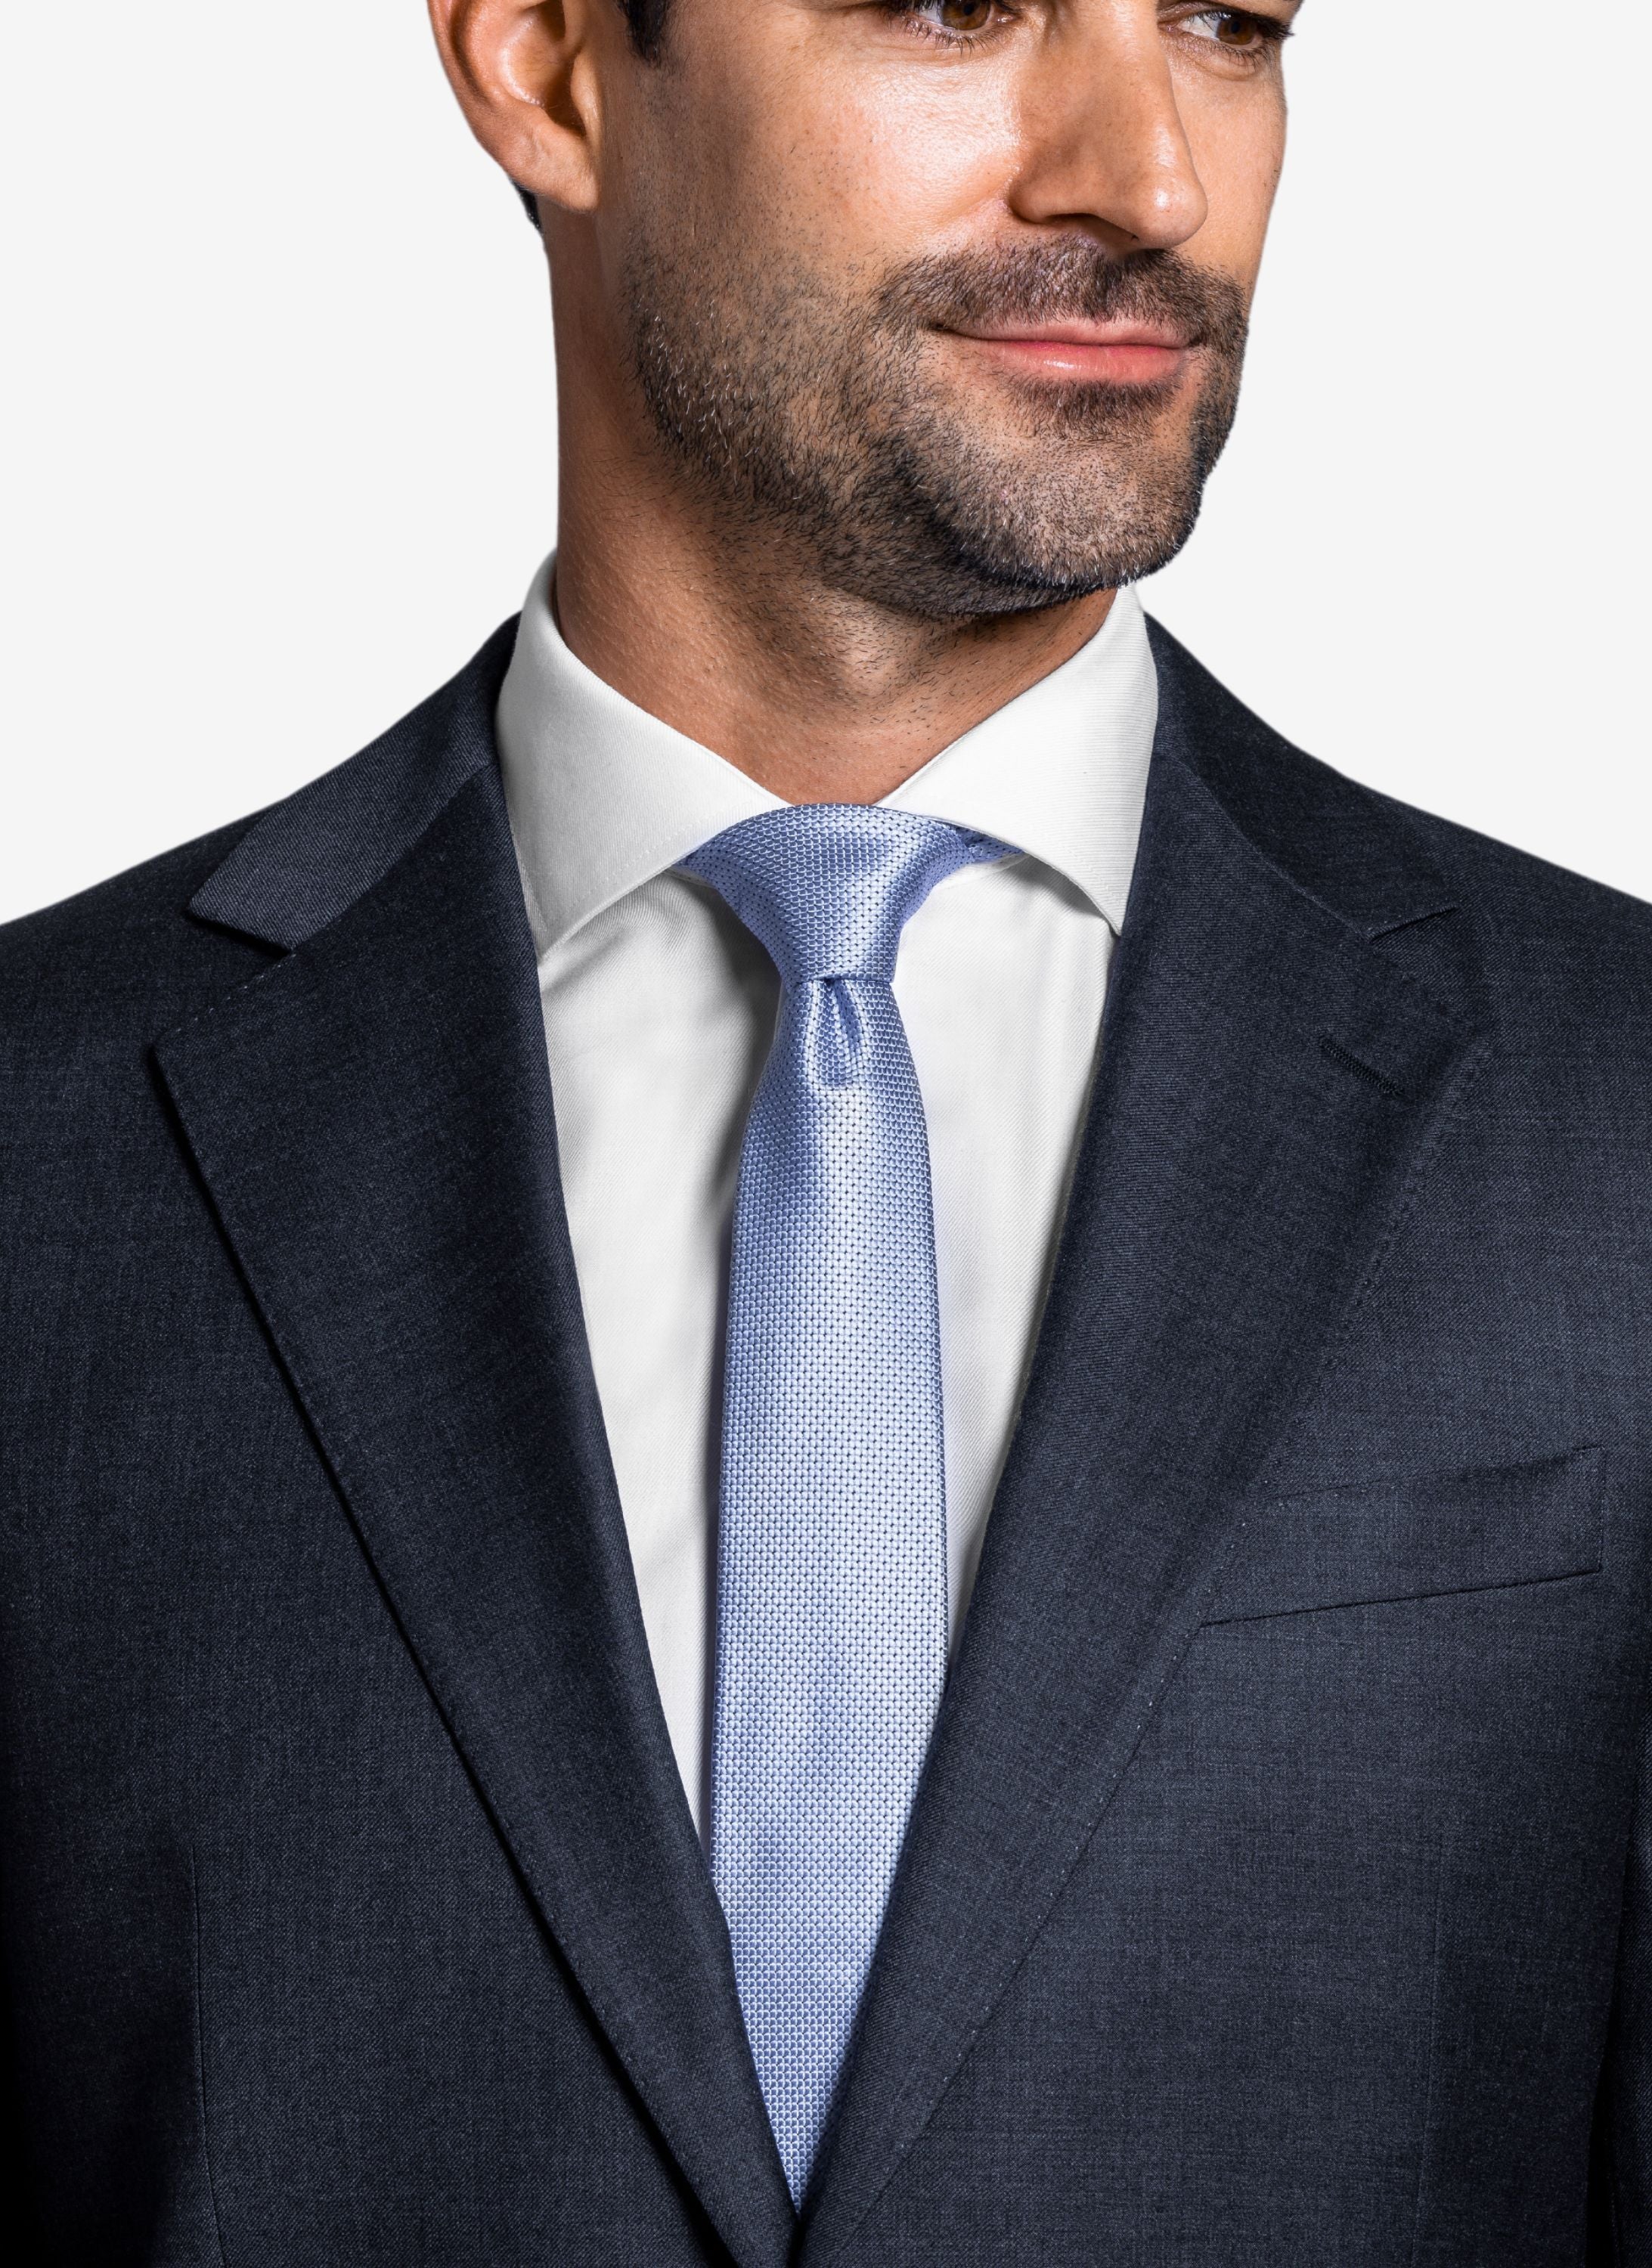 Hellblaue Krawatte mit weissen Hemd und Anzugsakko anthrazit.